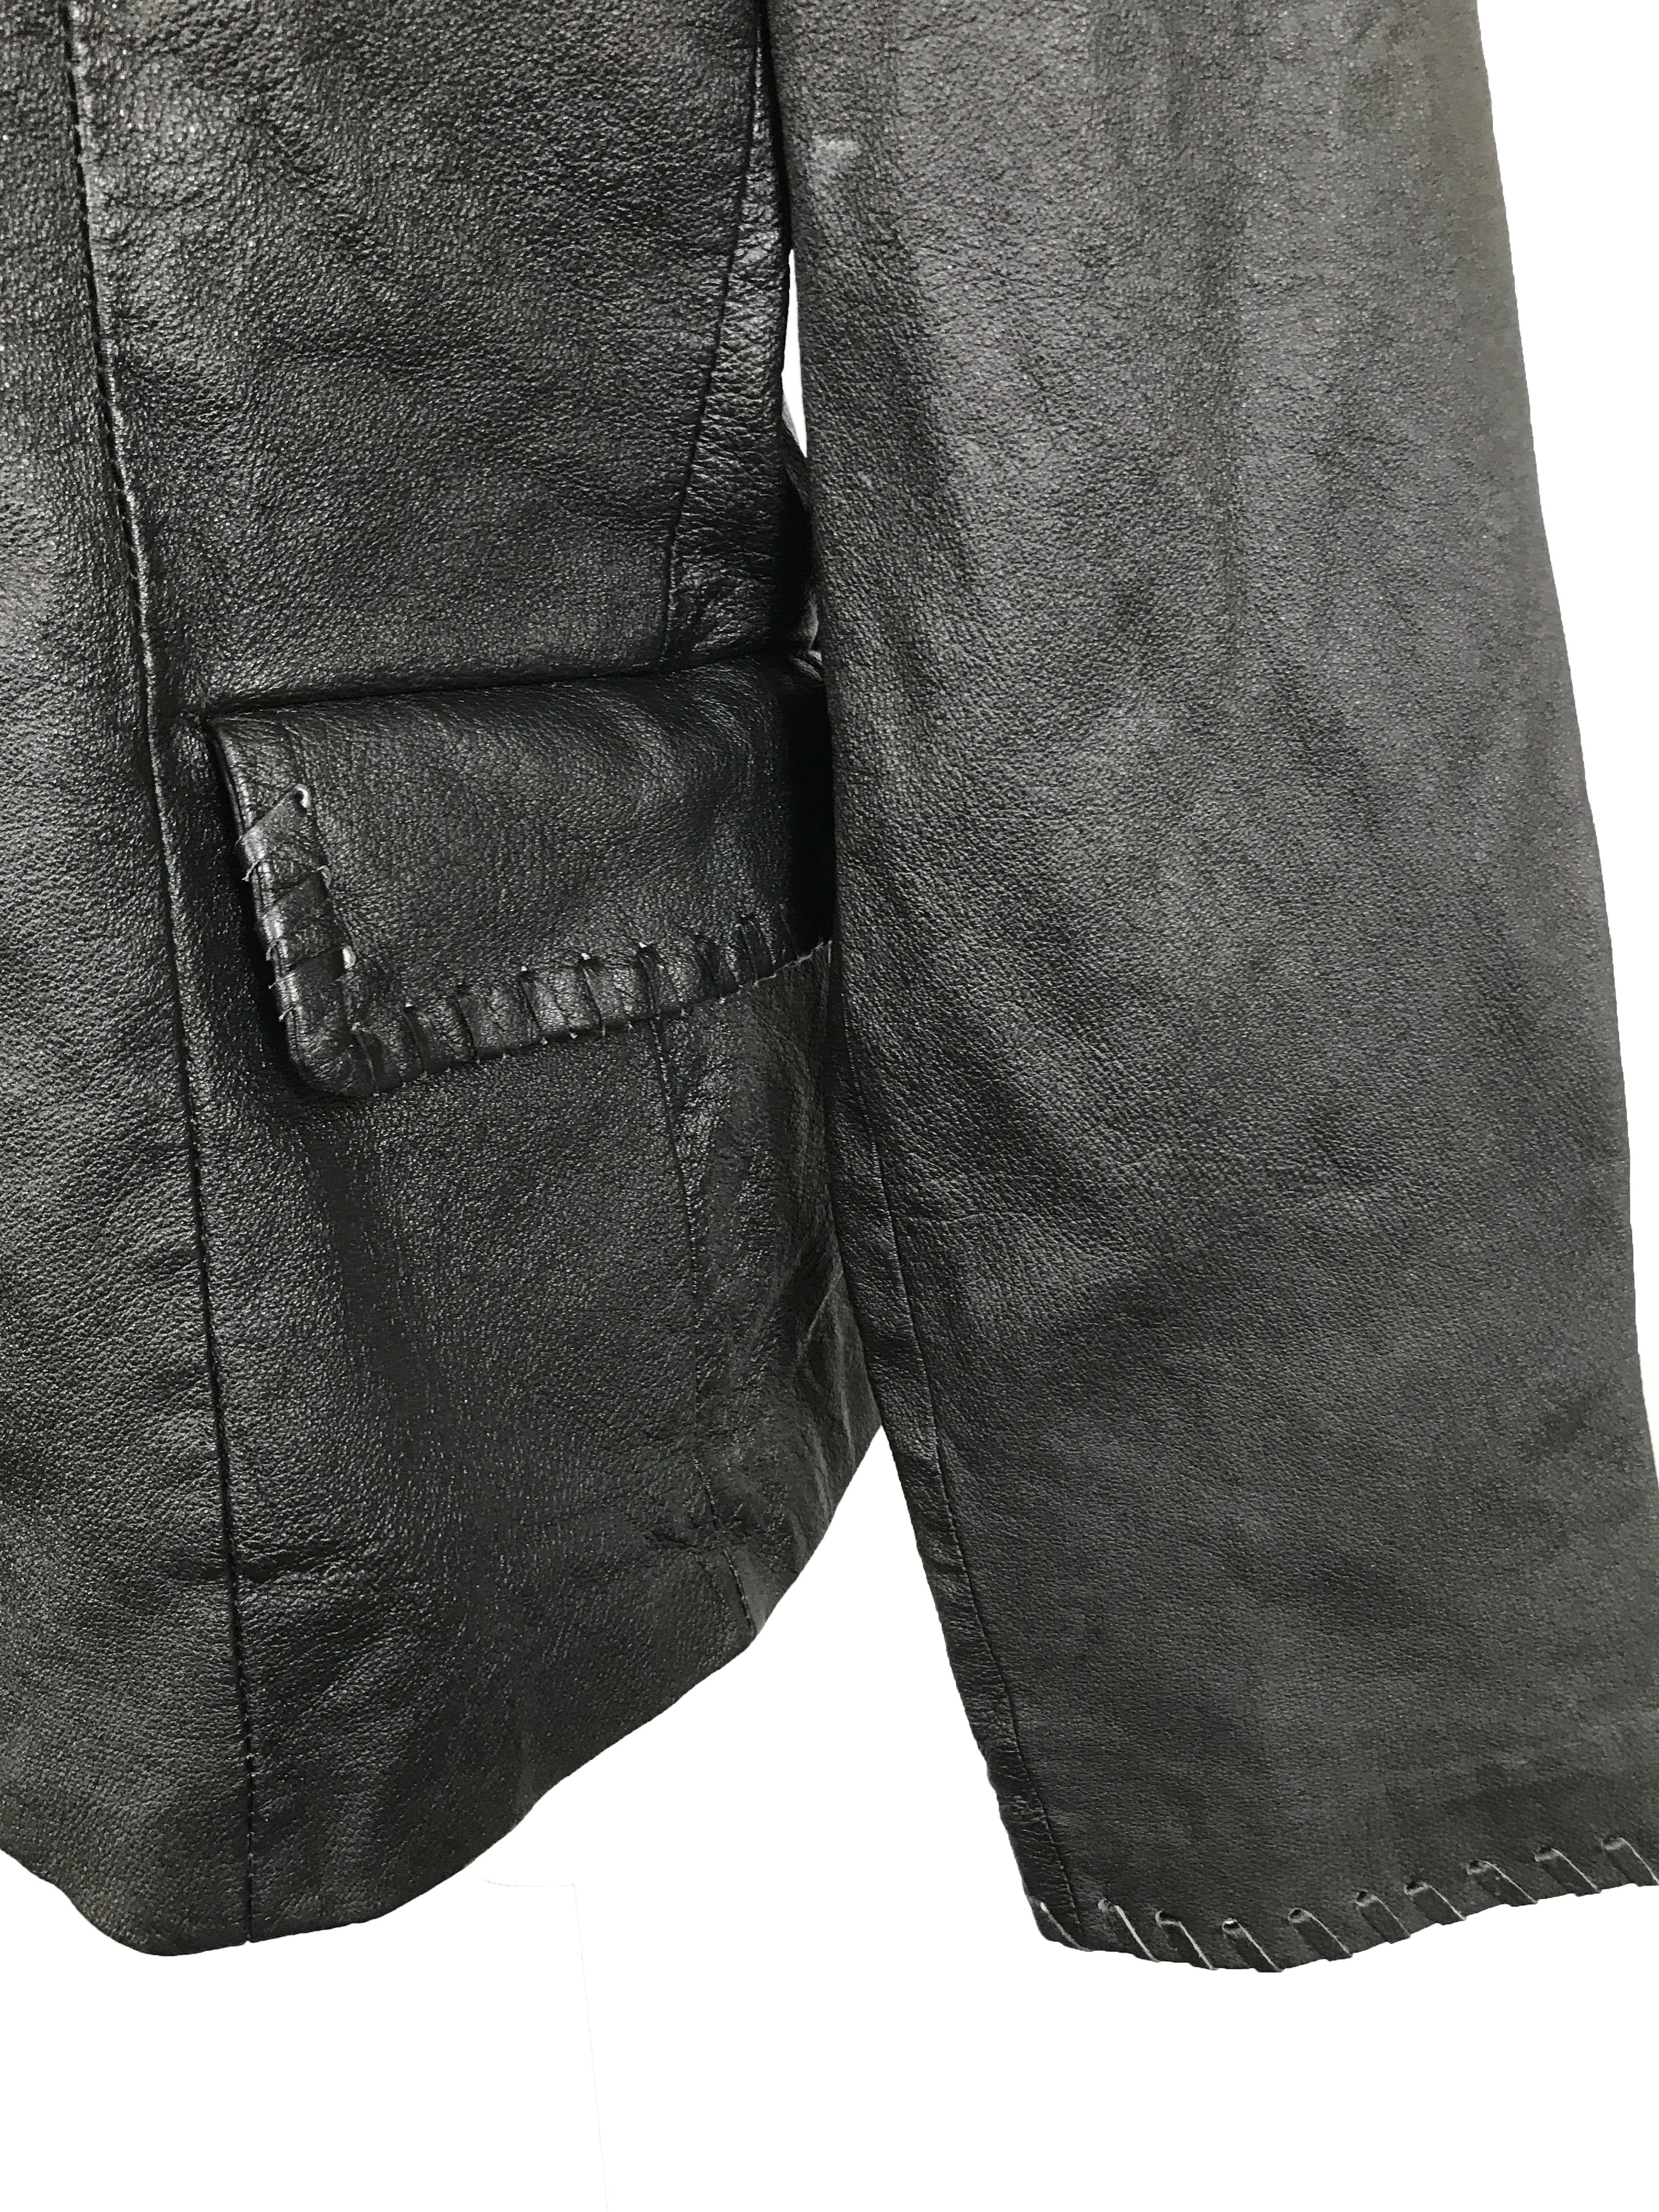 Black Leather Jacket Women' Size 14